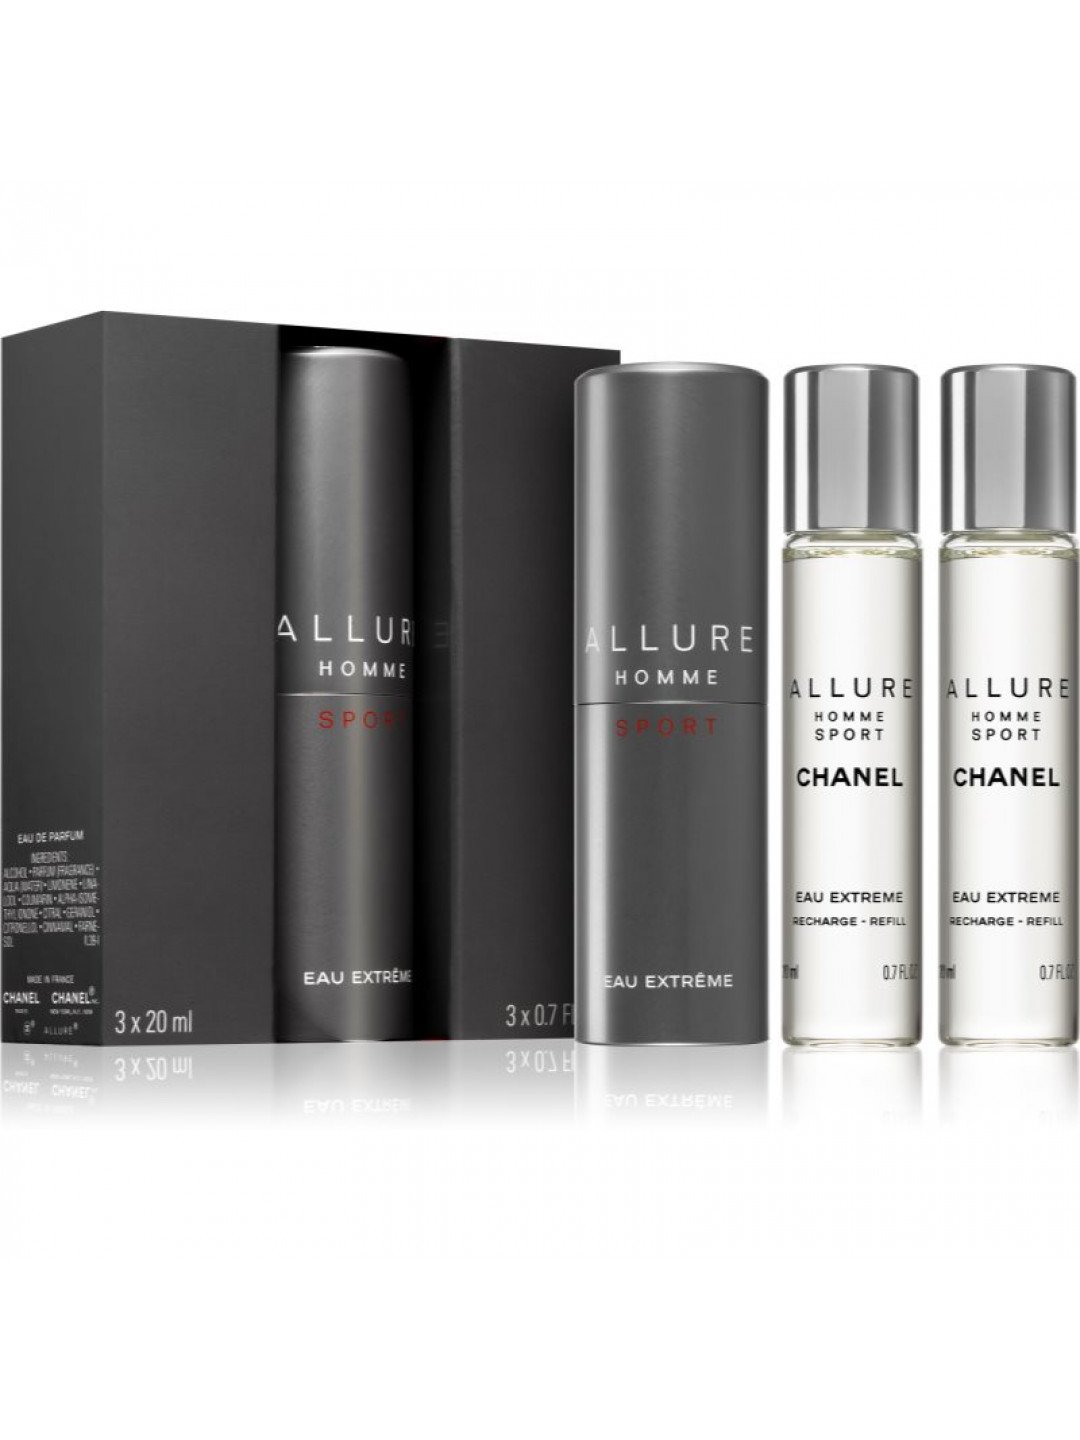 Chanel Allure Homme Sport Eau Extreme parfémovaná voda 1x plnitelná 2x náplň pro muže 3×20 ml